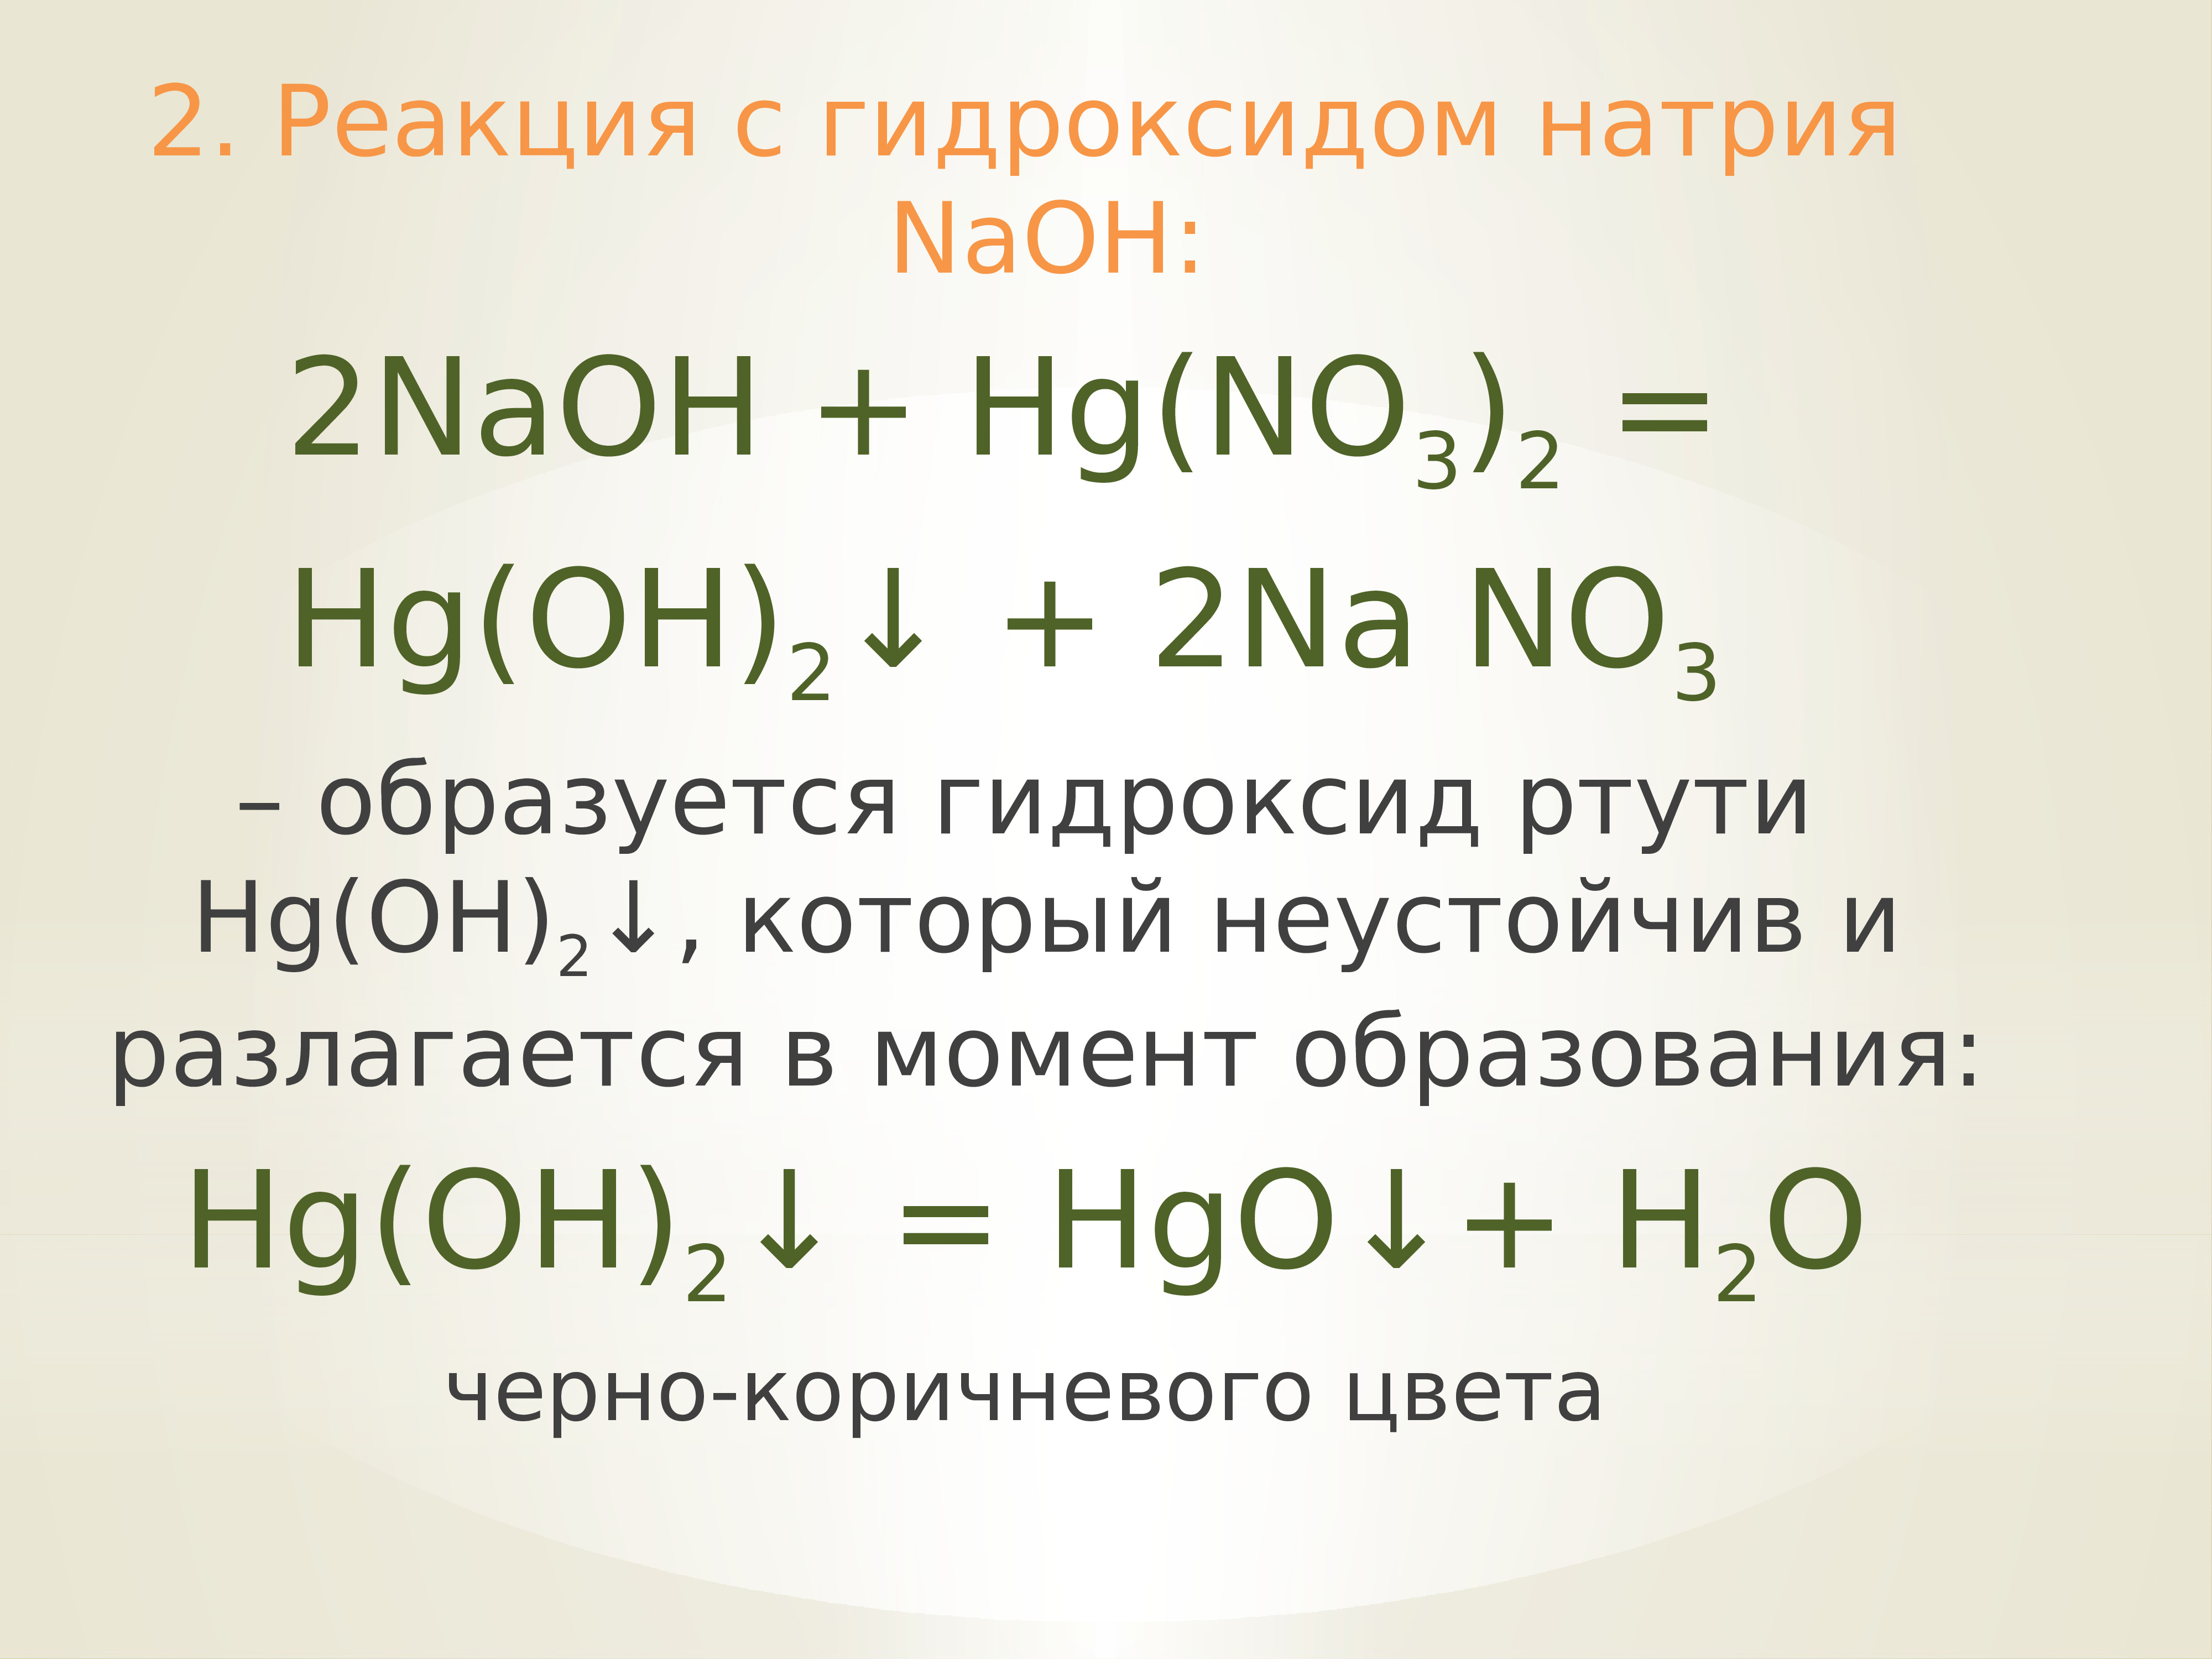 Раствор гидроксида натрия является кислотой. Реакции с гидроксидом натрия. Взаимодействие гидроксида натрия. Гидроксид ртути. Качественная реакция на гидроксид натрия.